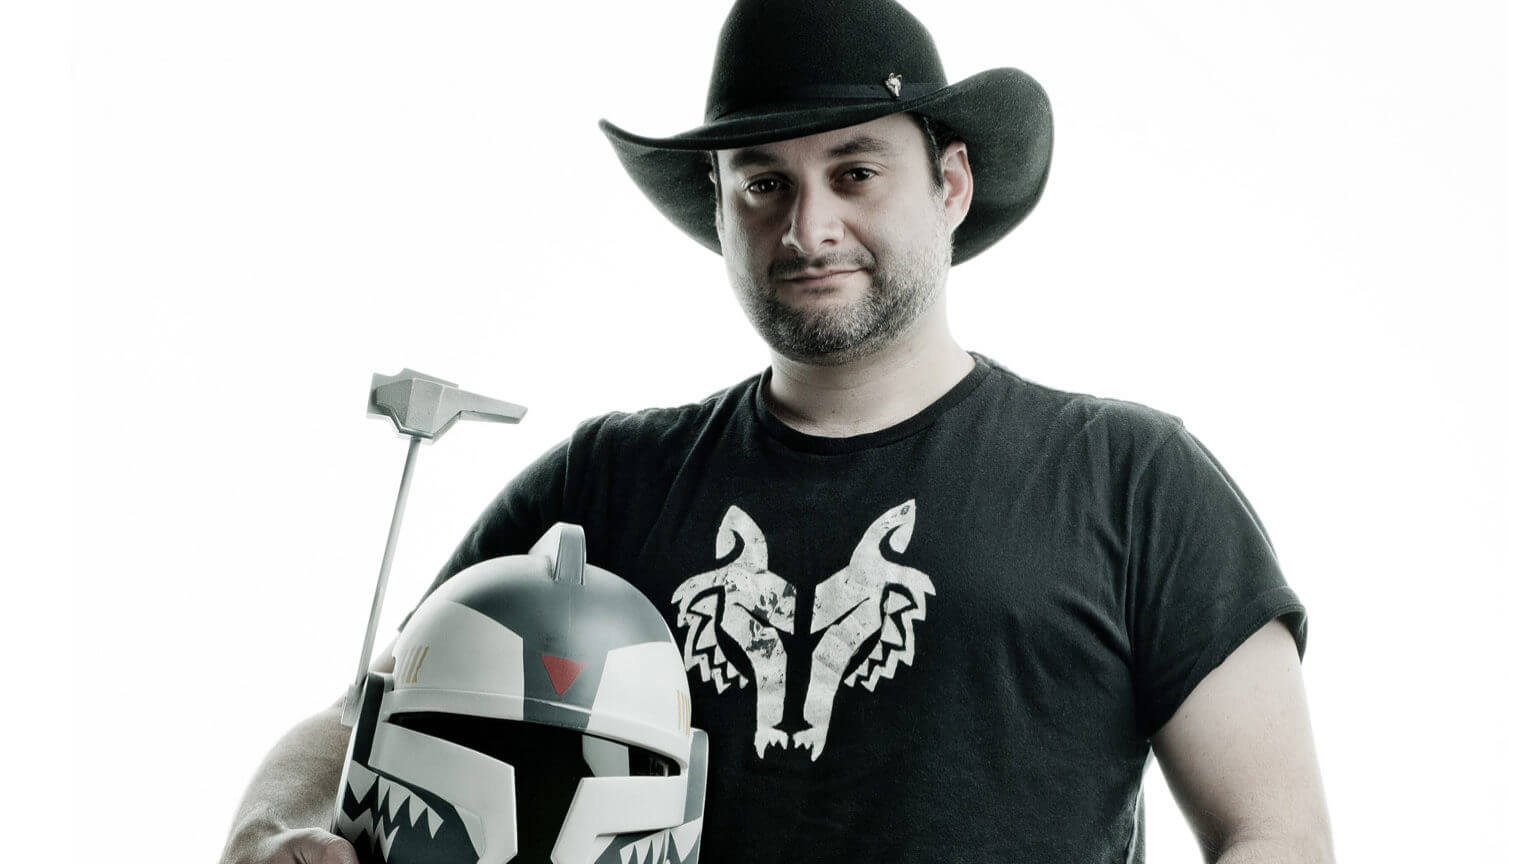 Dave Filoni a Star Wars jövője, aki megmutatta, hogy kell jó sorozatot készíteni